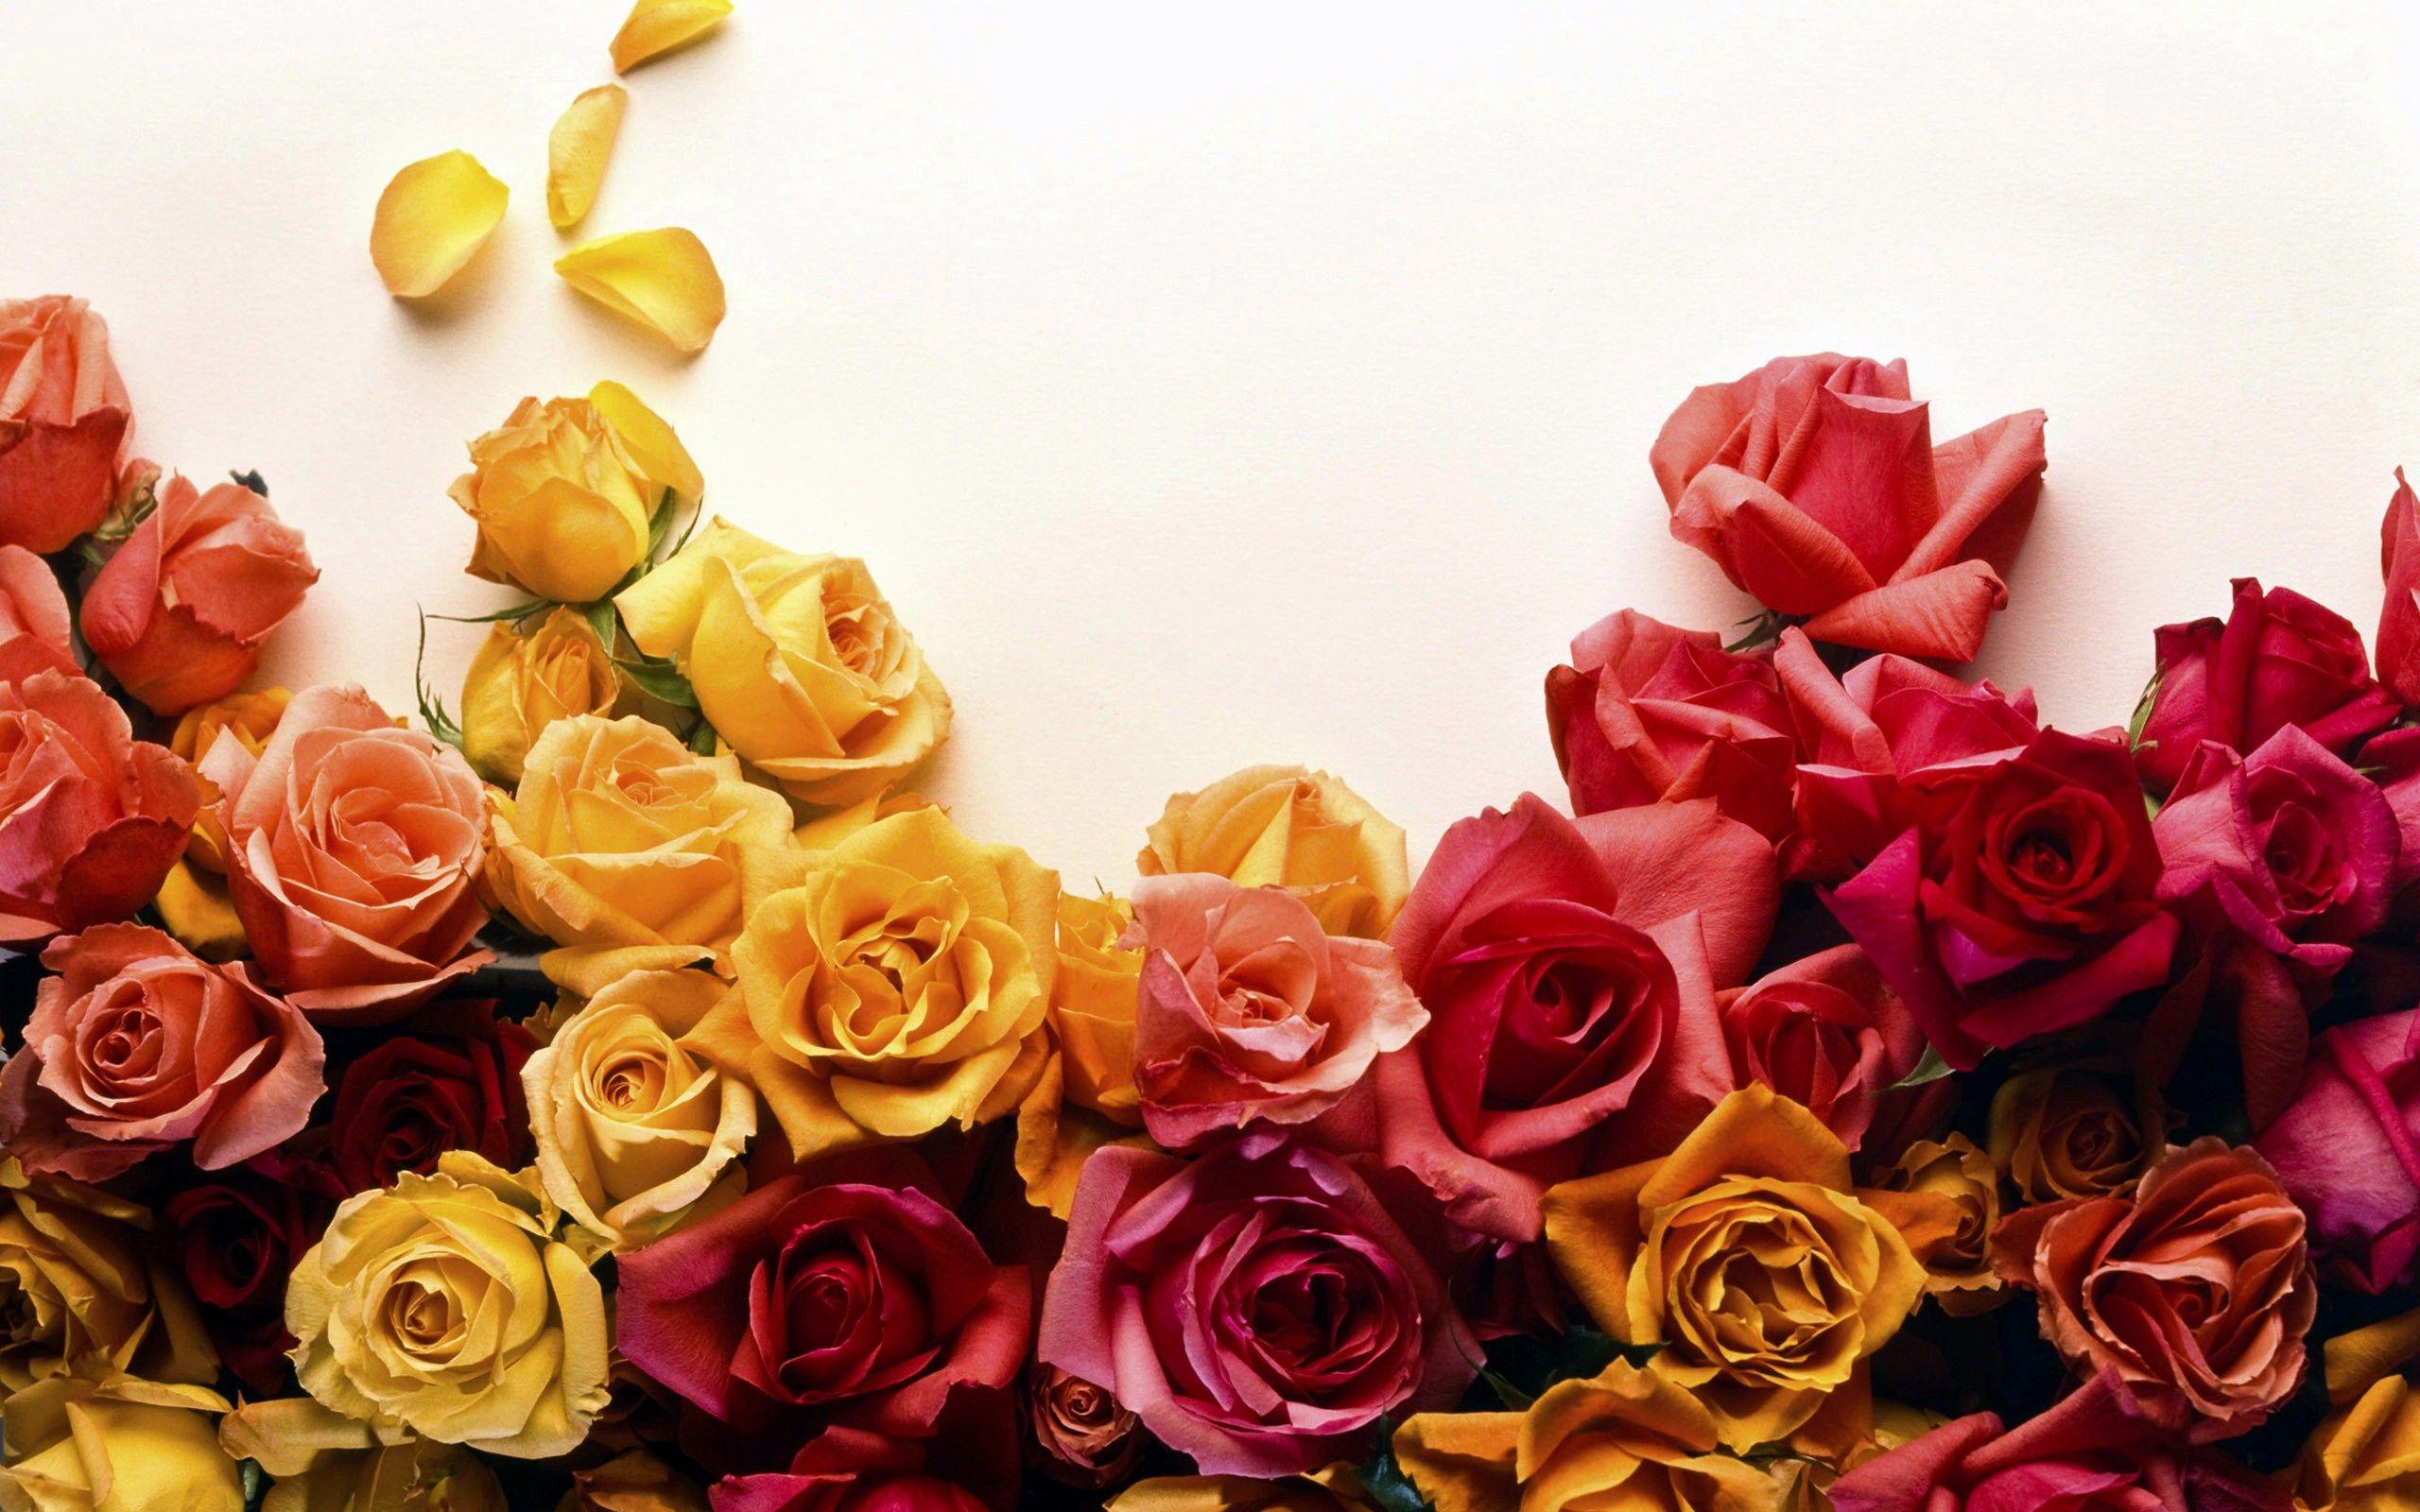 Colors of Roses Wallpaper